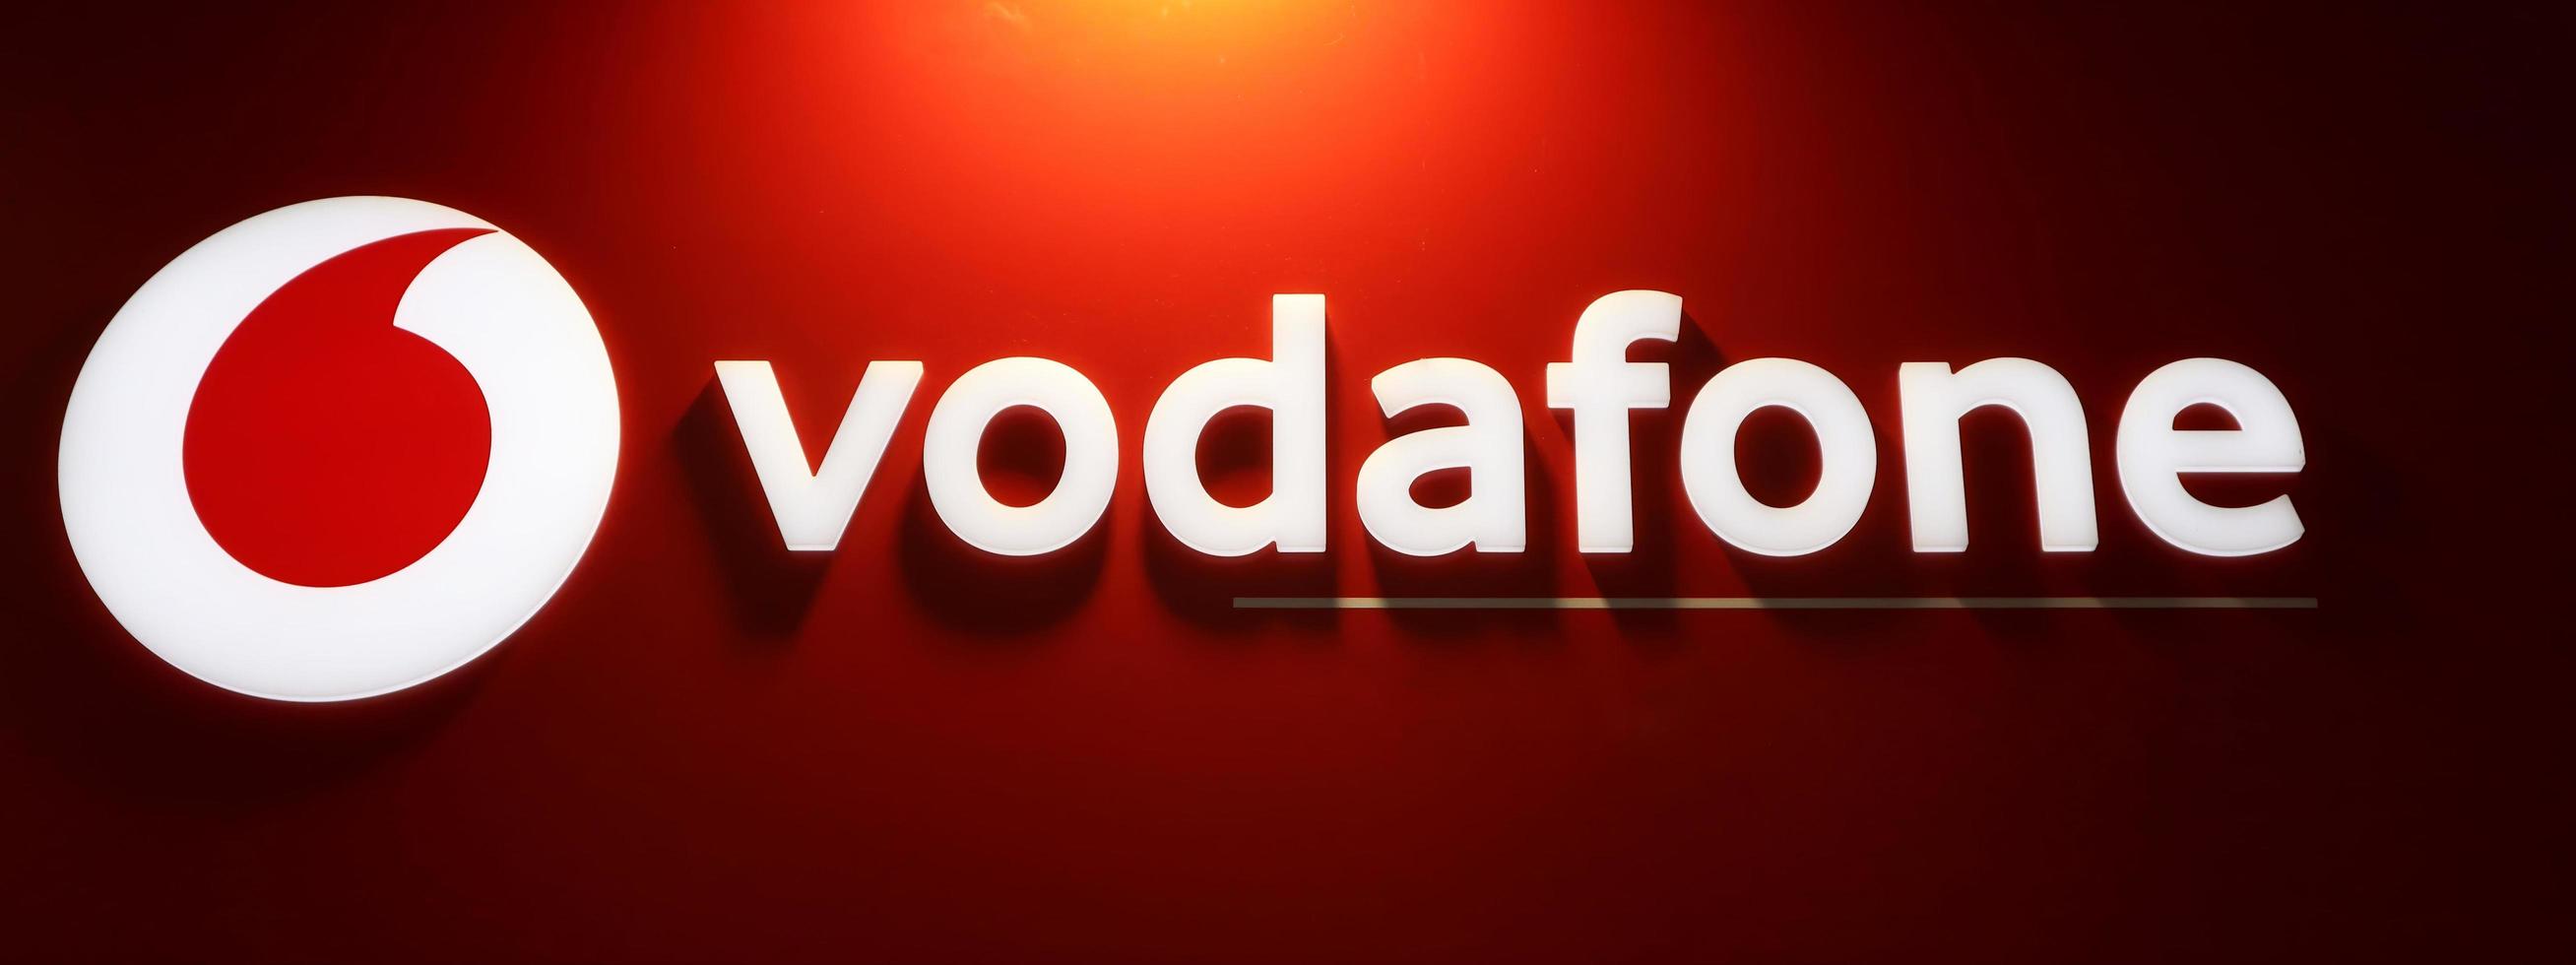 bologna, italien, 2021, vodafone store sign in bologna, italien. Vodafone ist eines der größten multinationalen Telekommunikationsunternehmen der Welt. foto